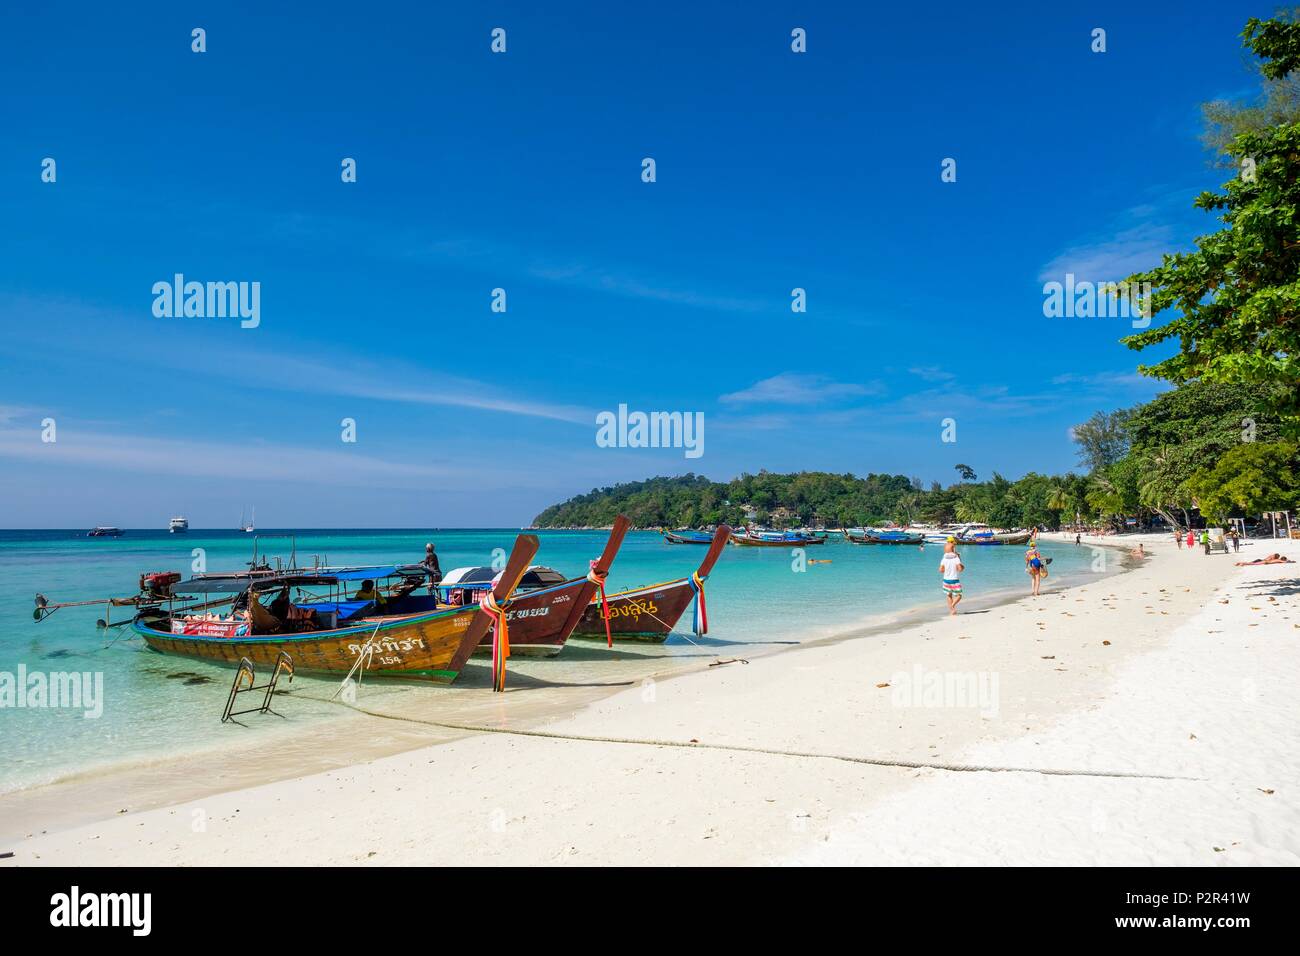 La Thaïlande, province de Phang Nga, Ko Lipe, plage de sable blanc de Pattaya, longue queue embarcations traditionnelles Banque D'Images